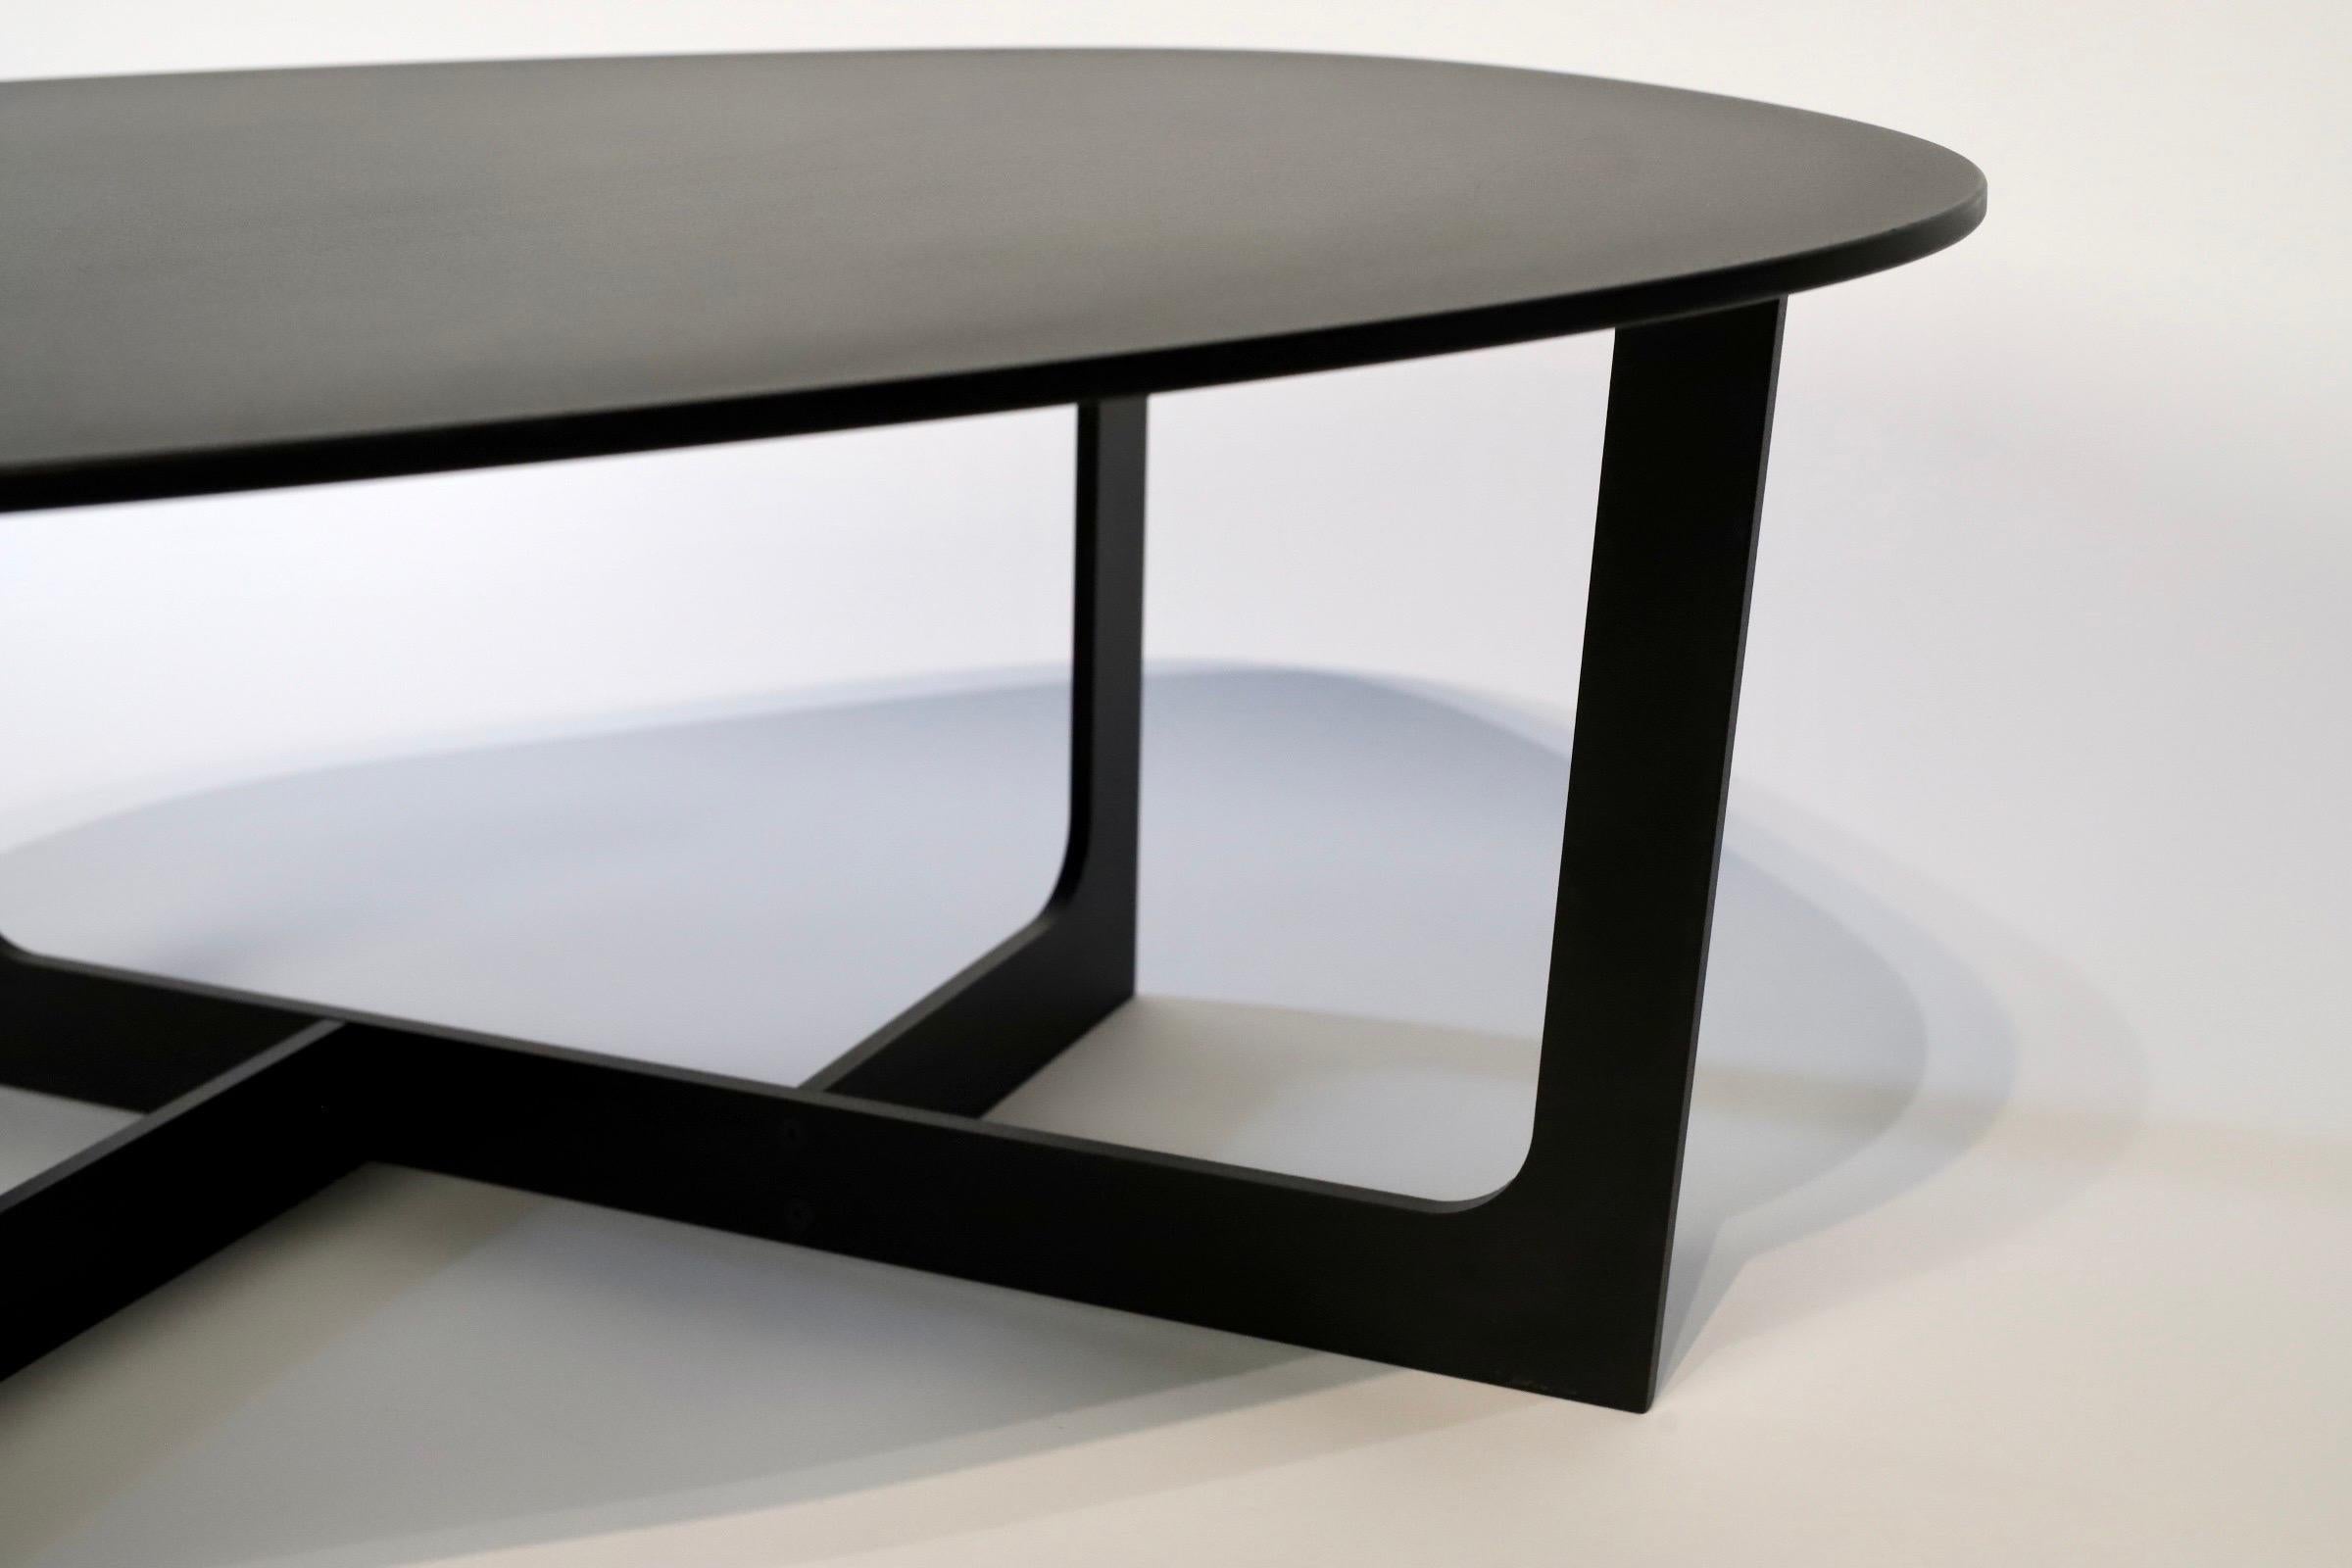 Der Cocktail- oder Beistelltisch, der von Ernst & Jensen für Erik Jorgensen entworfen wurde, ist ein atemberaubendes Stück, das Form und Funktion nahtlos miteinander verbindet. Dieser mit viel Liebe zum Detail gefertigte Tisch verkörpert die Essenz